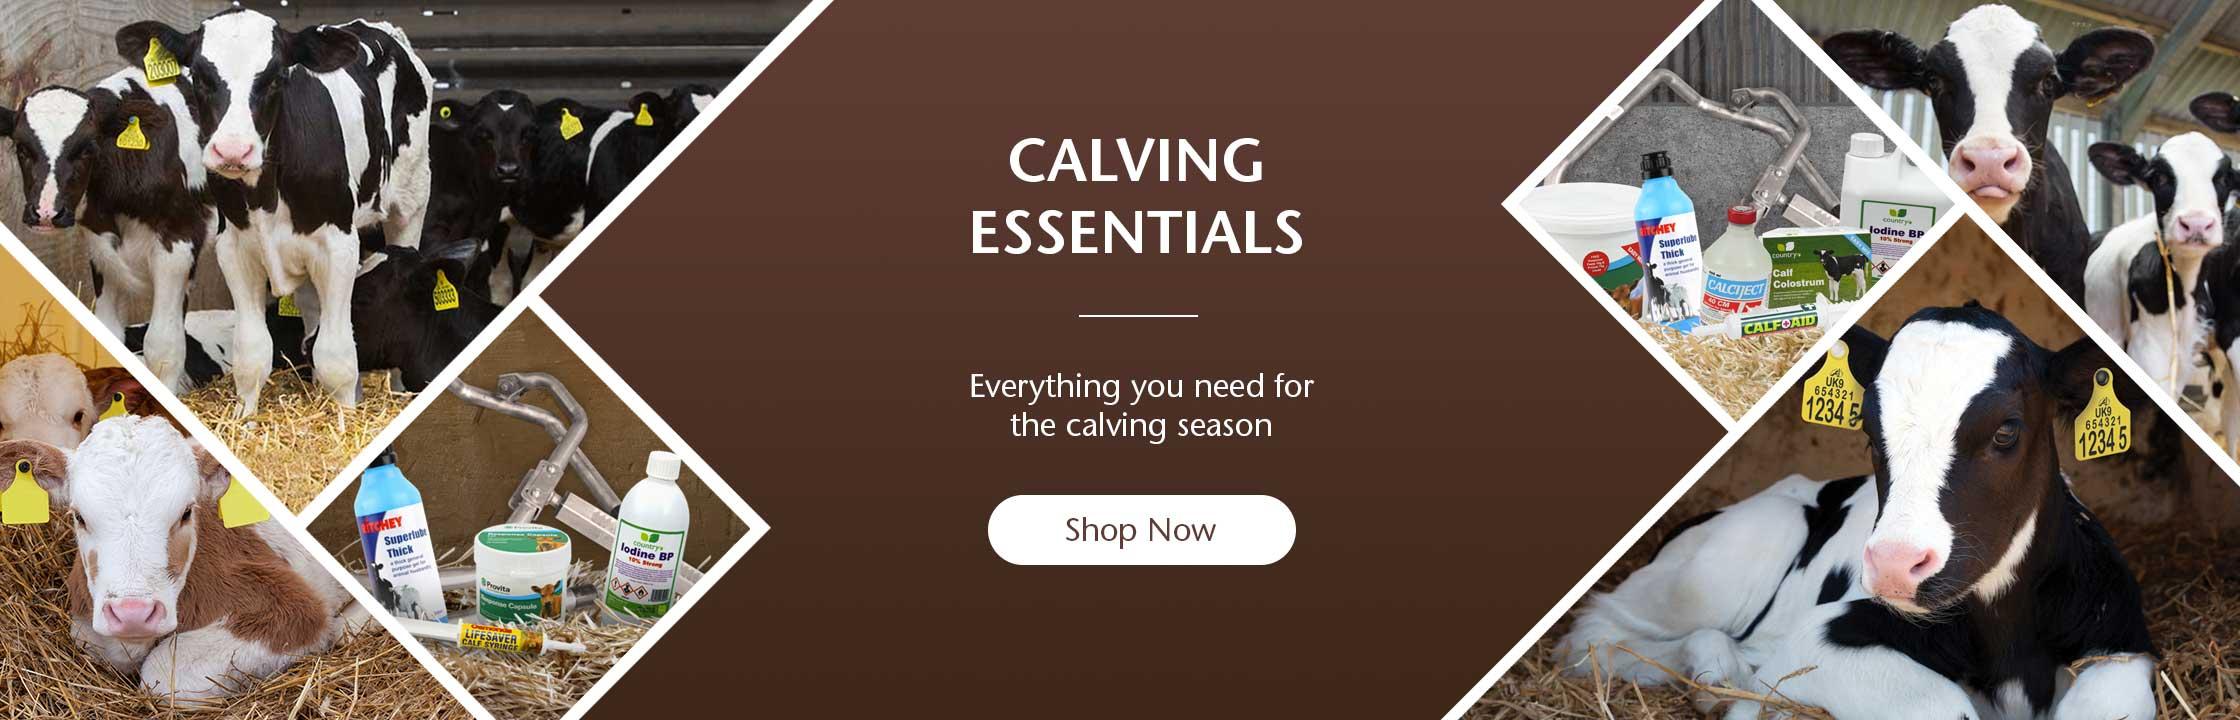 Calving Essentials